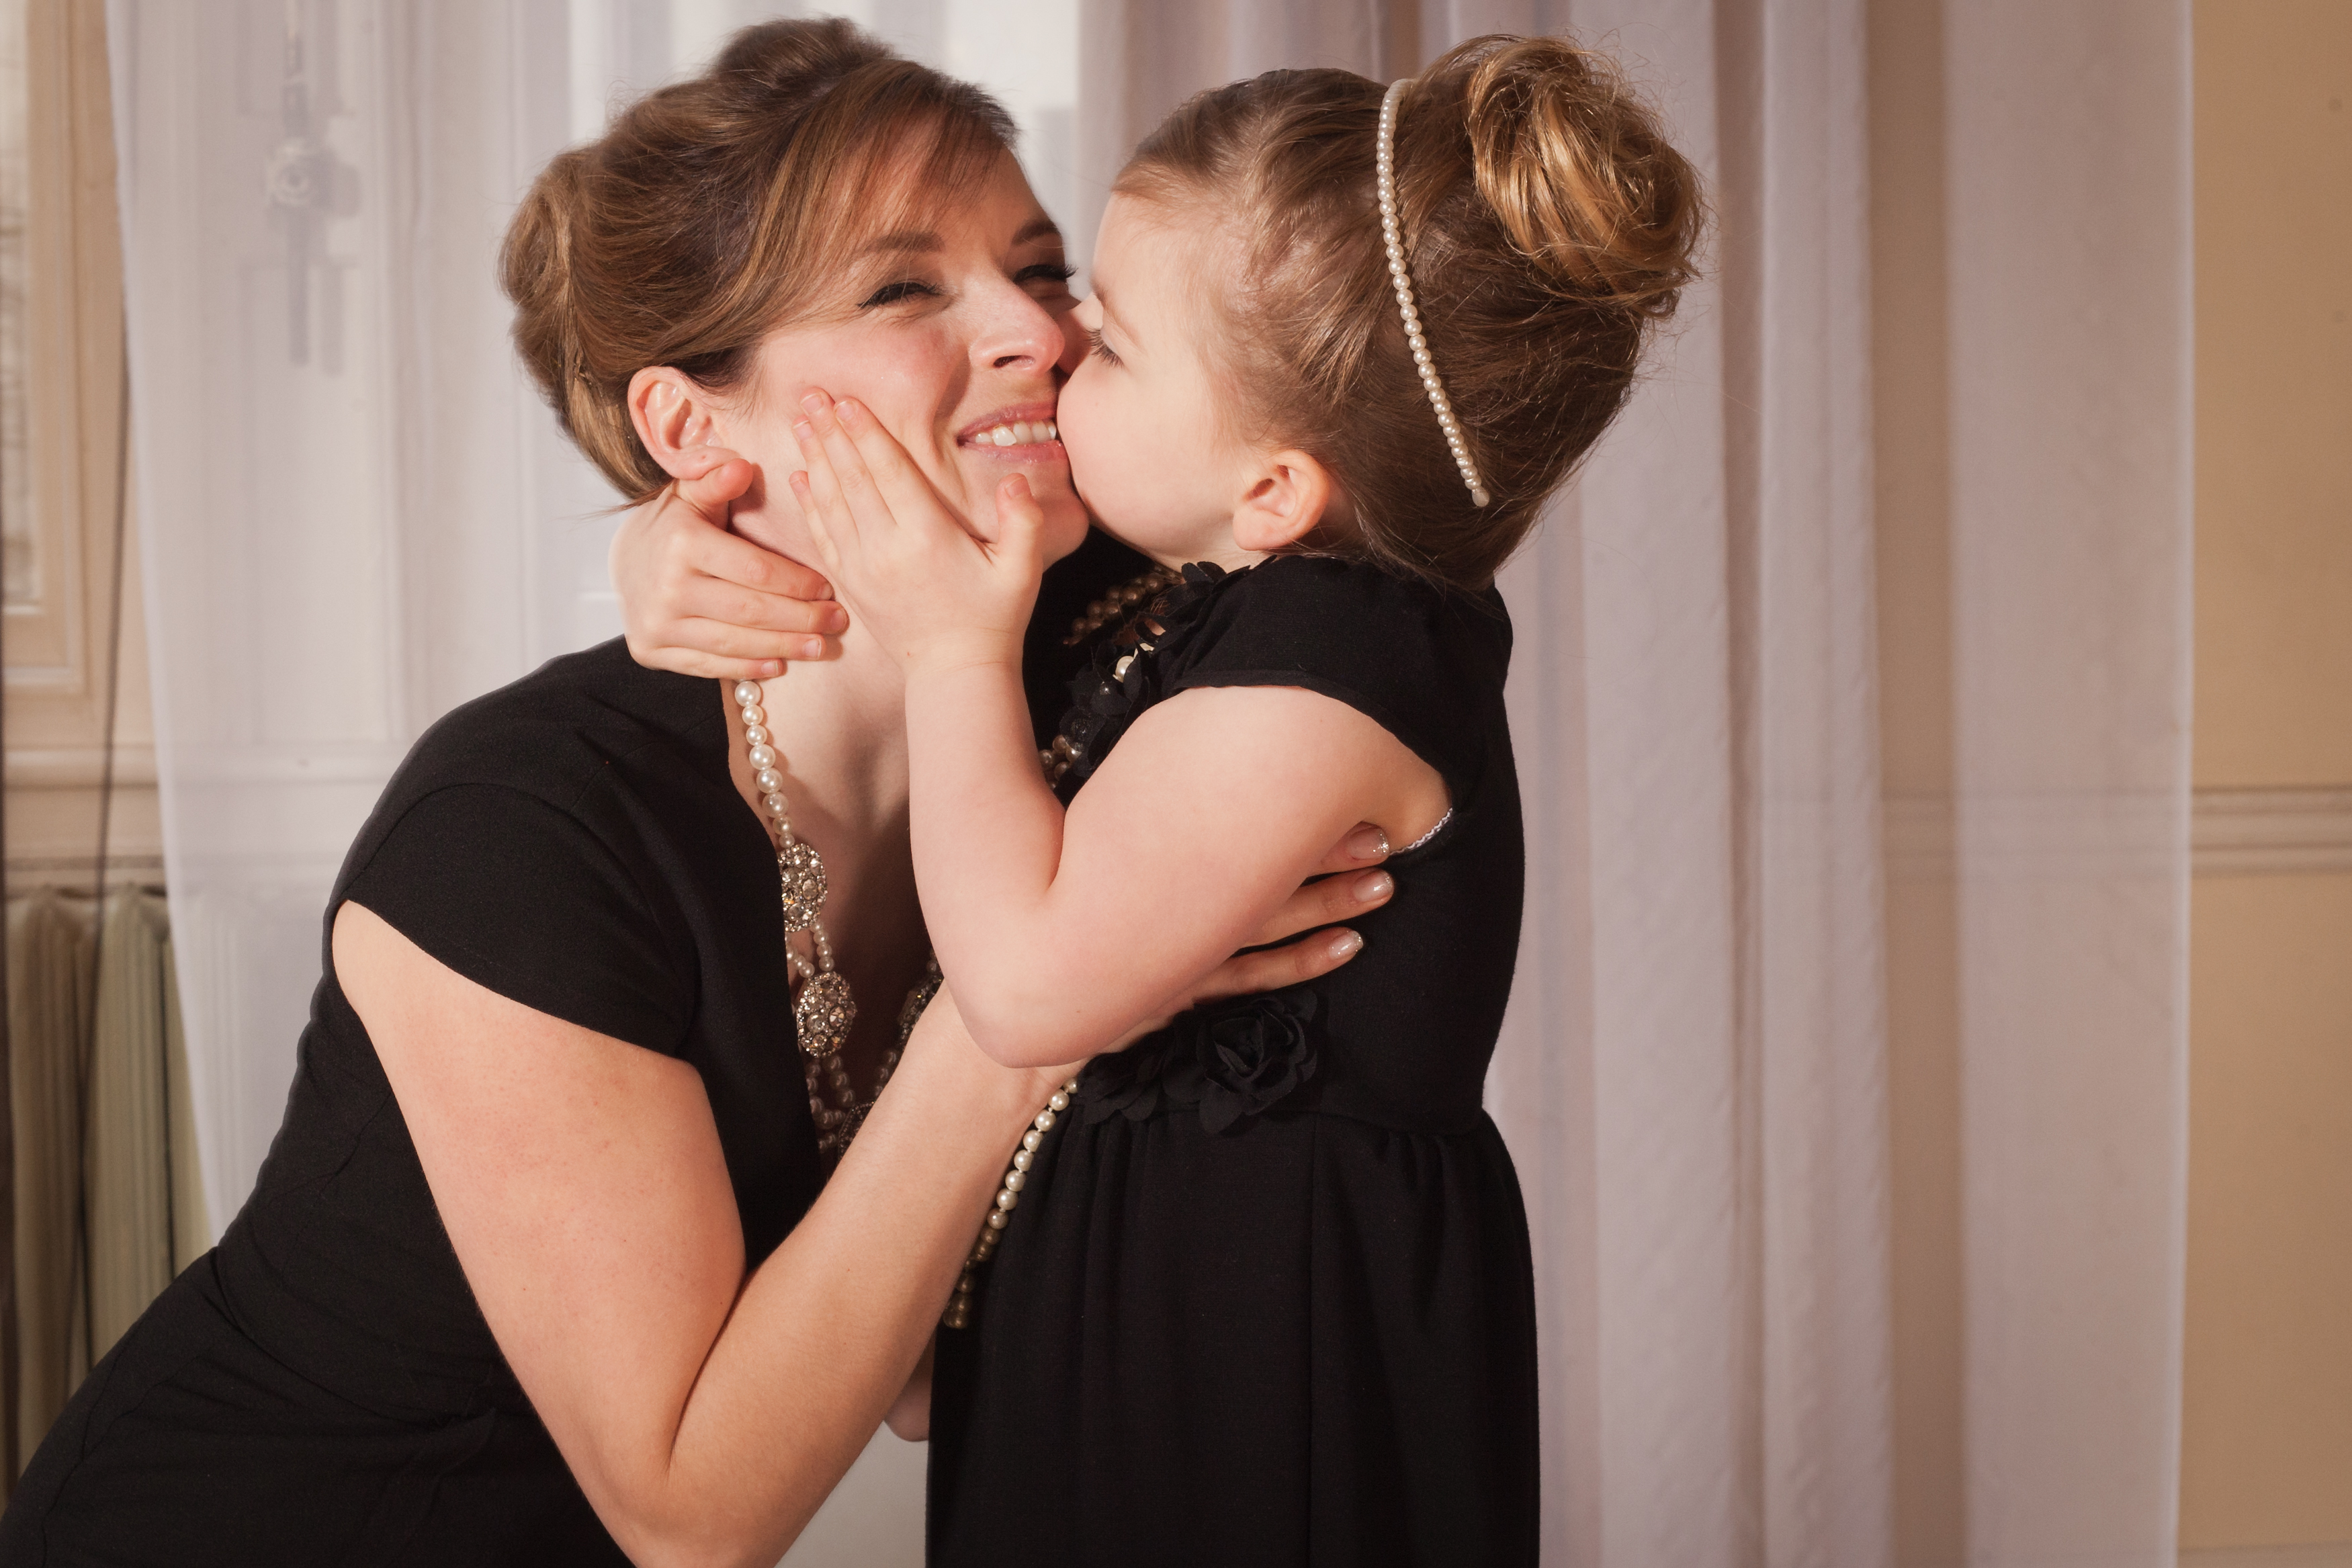 Лесбиянка мама учит дочку азам лесбийской любви